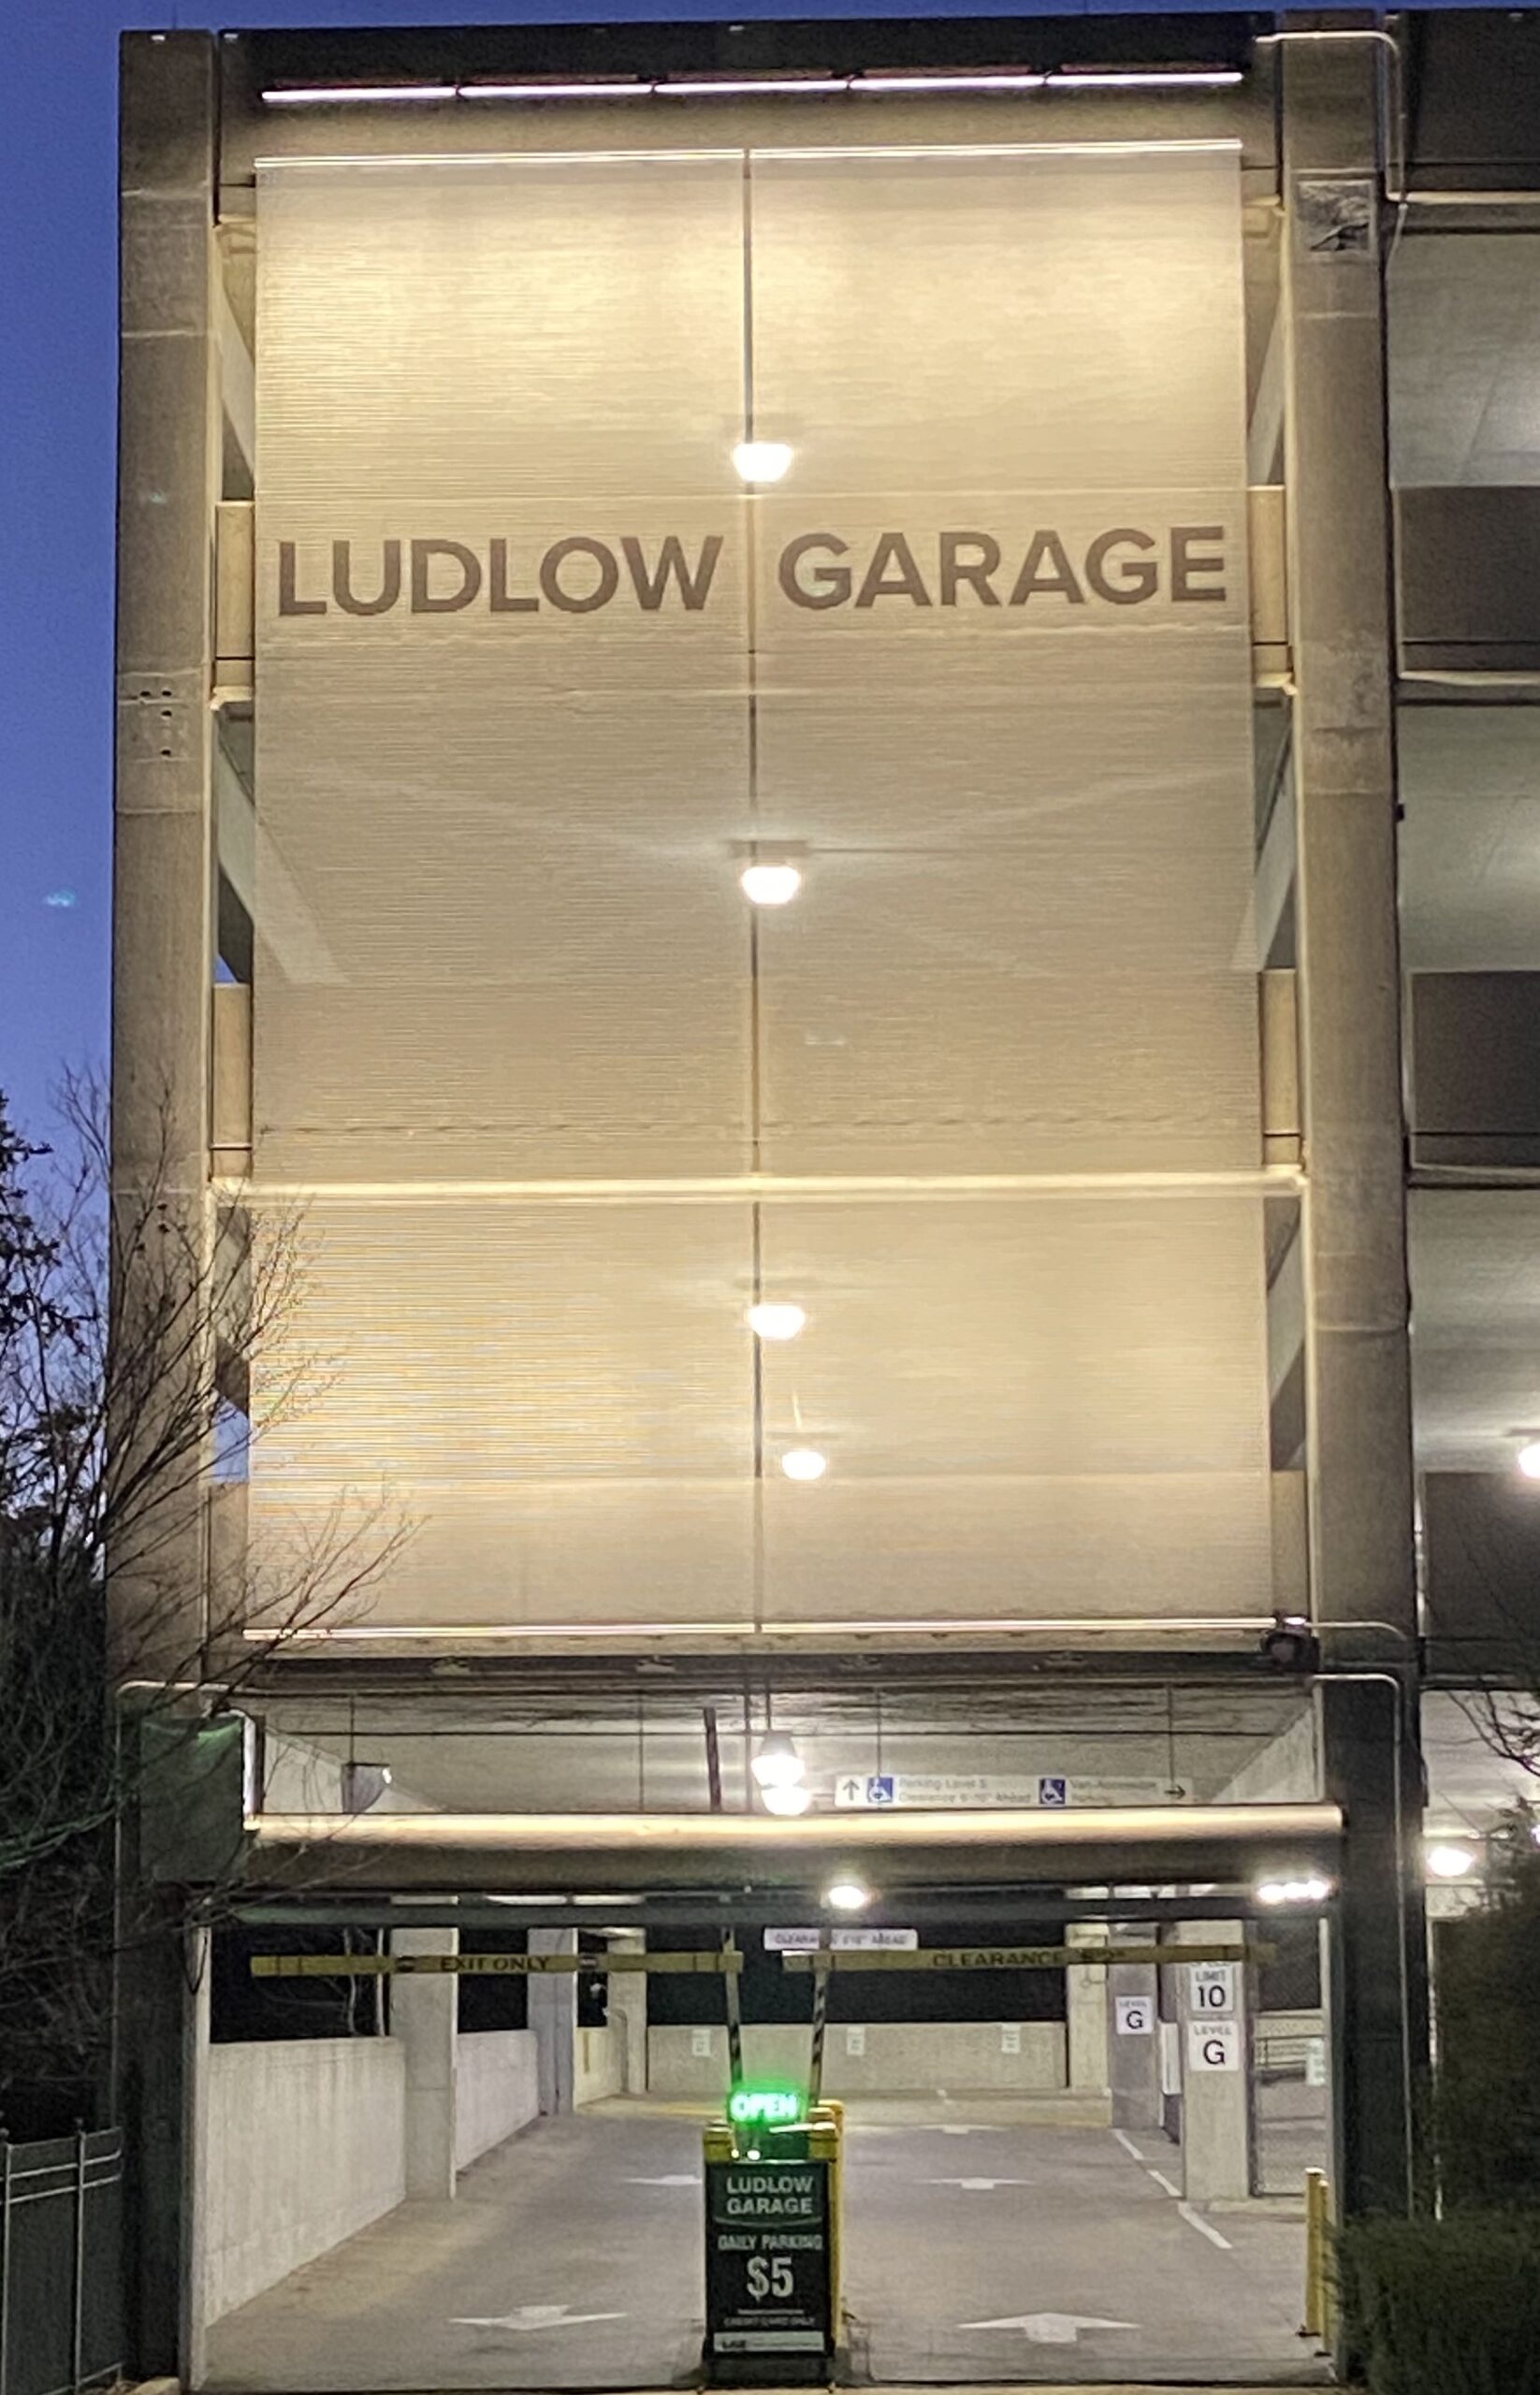 Ludlow garage sign, lit up at night